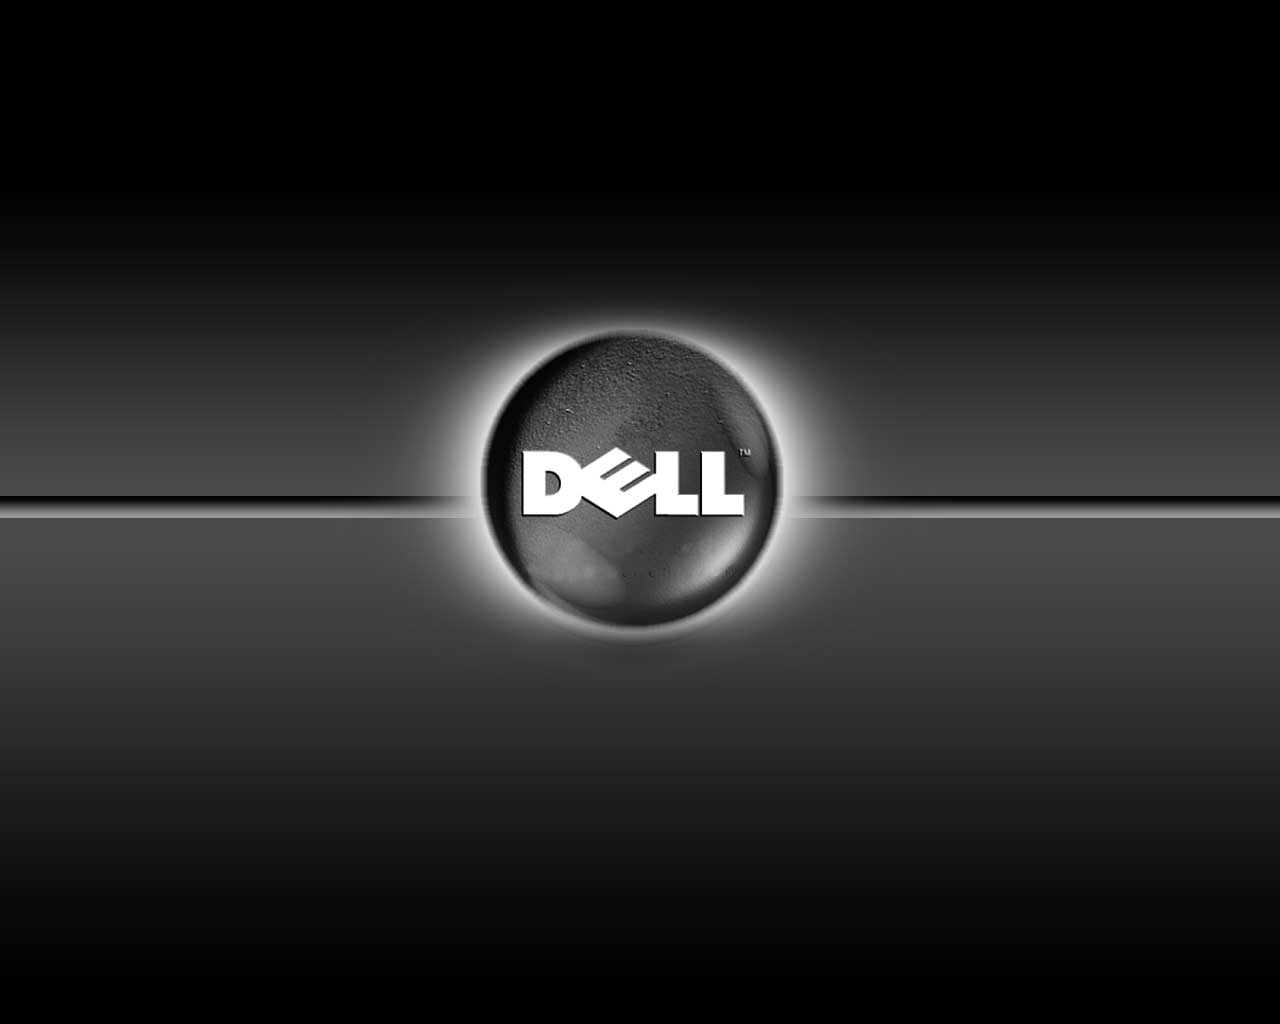 Dell Laptop Desktop Background Junkinside